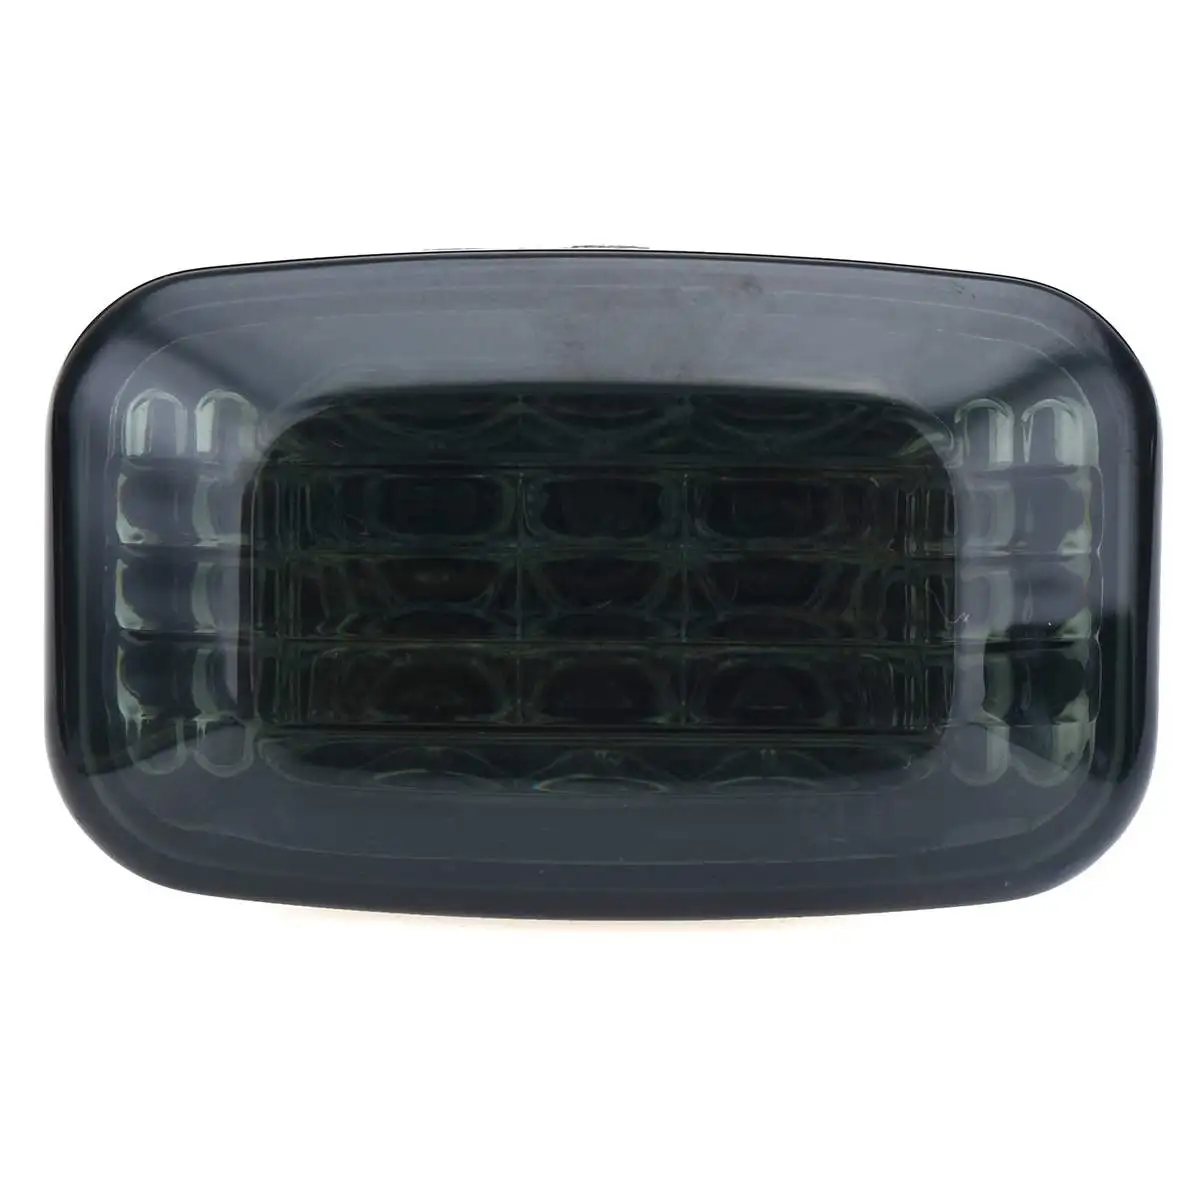 2 шт. автомобильный Боковой габаритный фонарь светодиодный светильник сигнала поворота для Toyota Land Cruiser 70 80 100 серии Amber